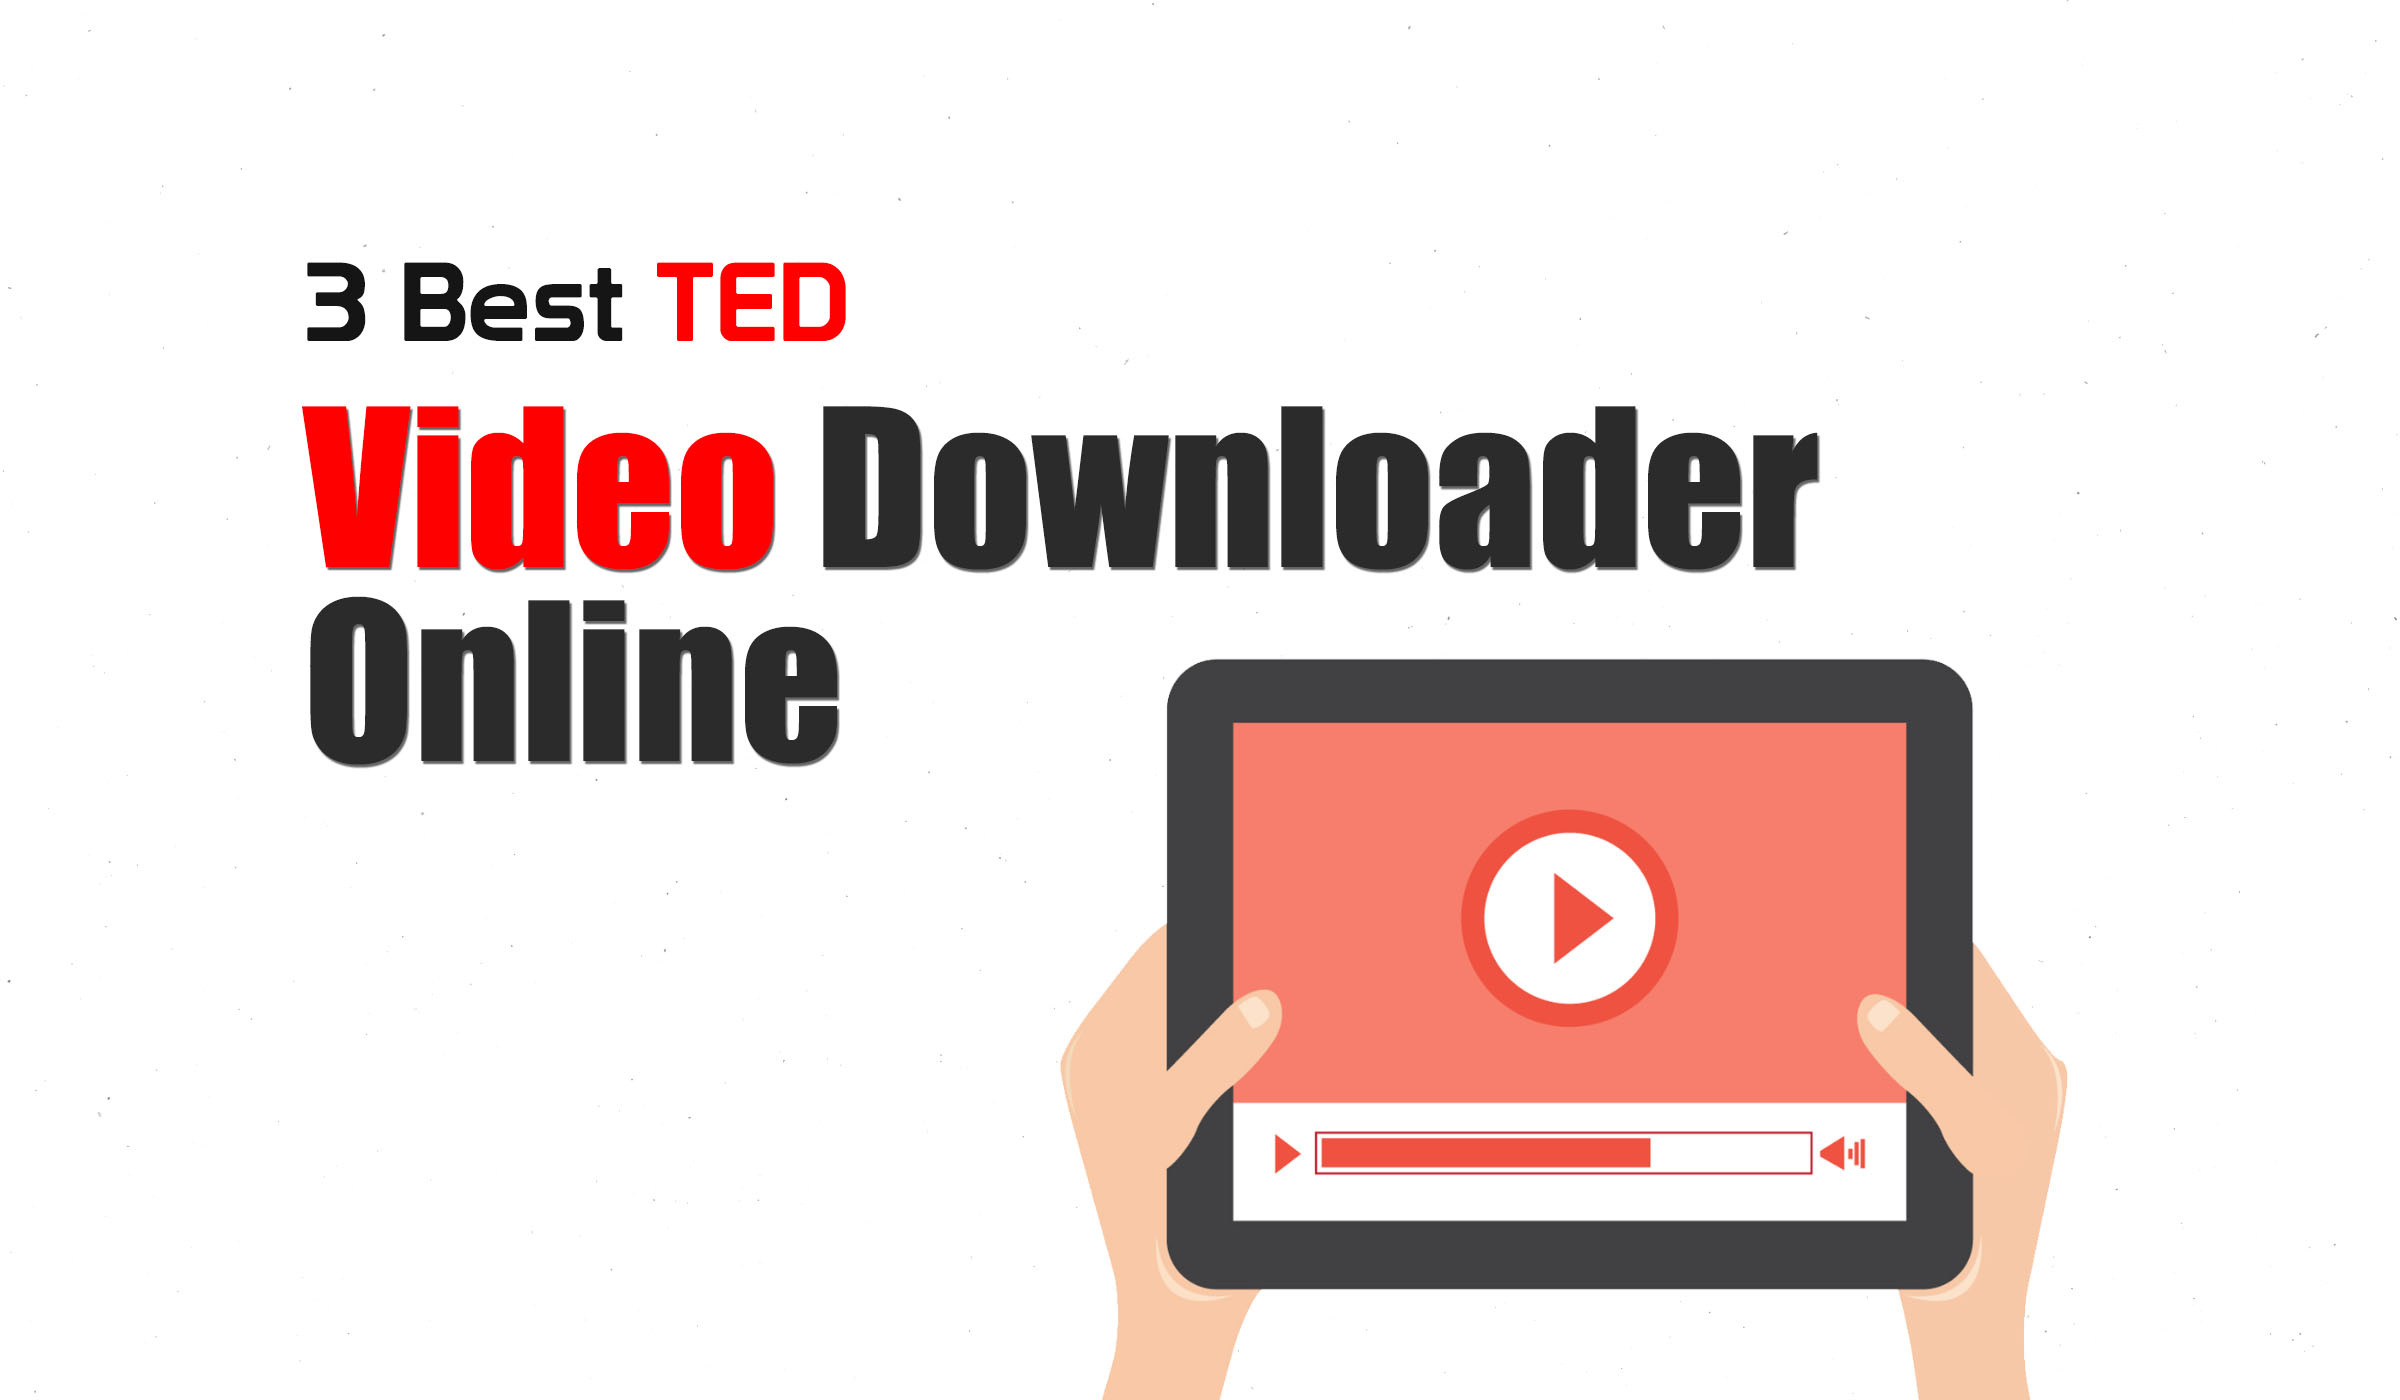 TED video downloader